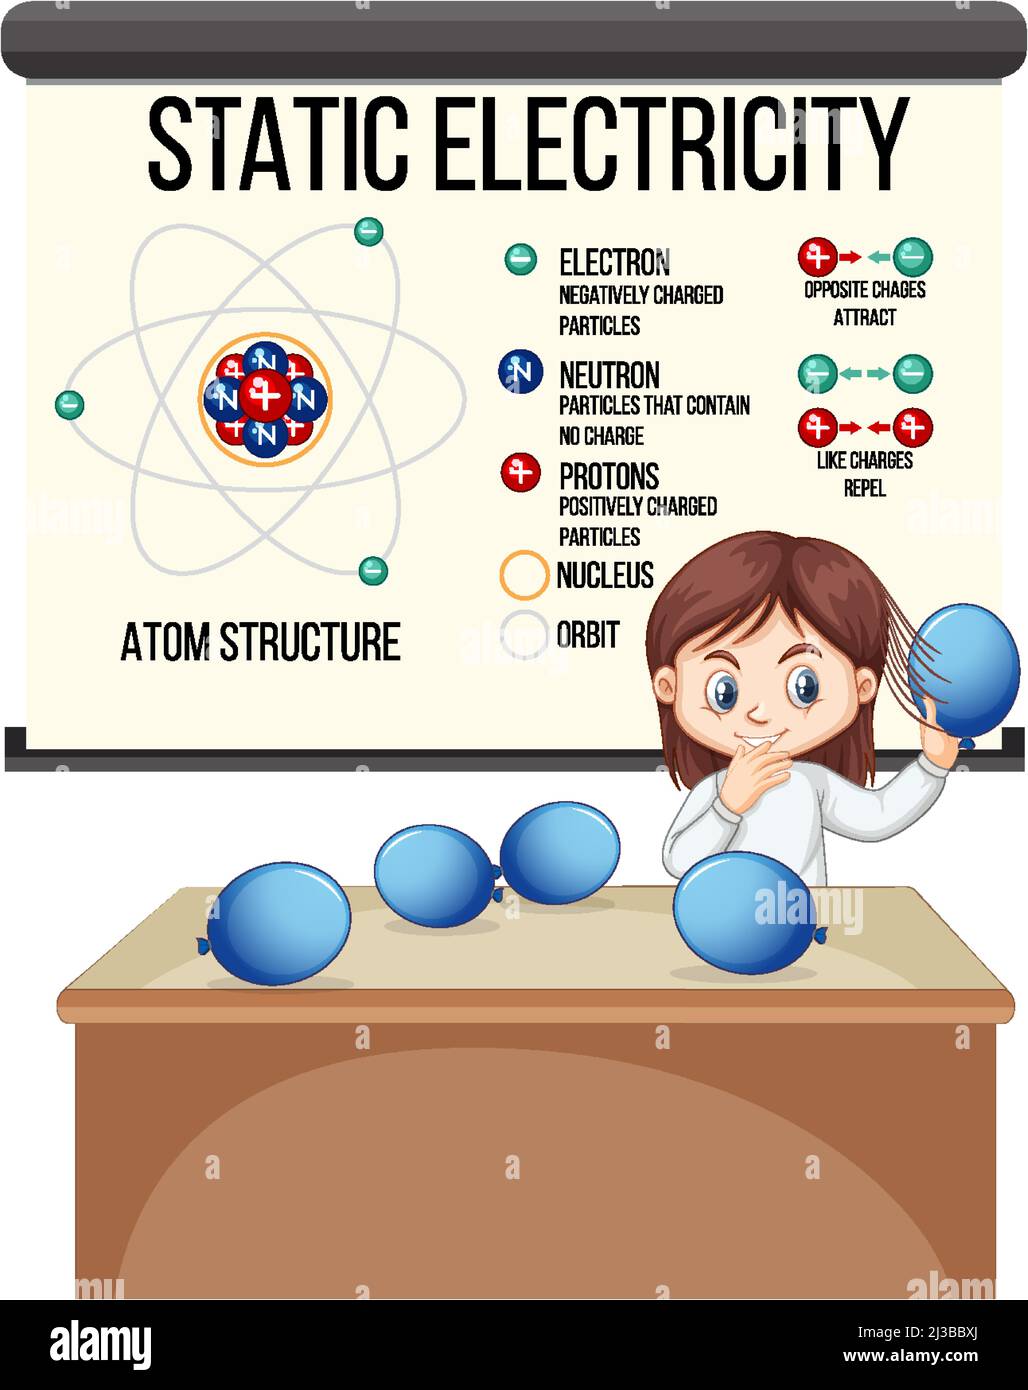 Wissenschaftler Mädchen erklärt Atom-Struktur der statischen Elektrizität Illustration Stock Vektor